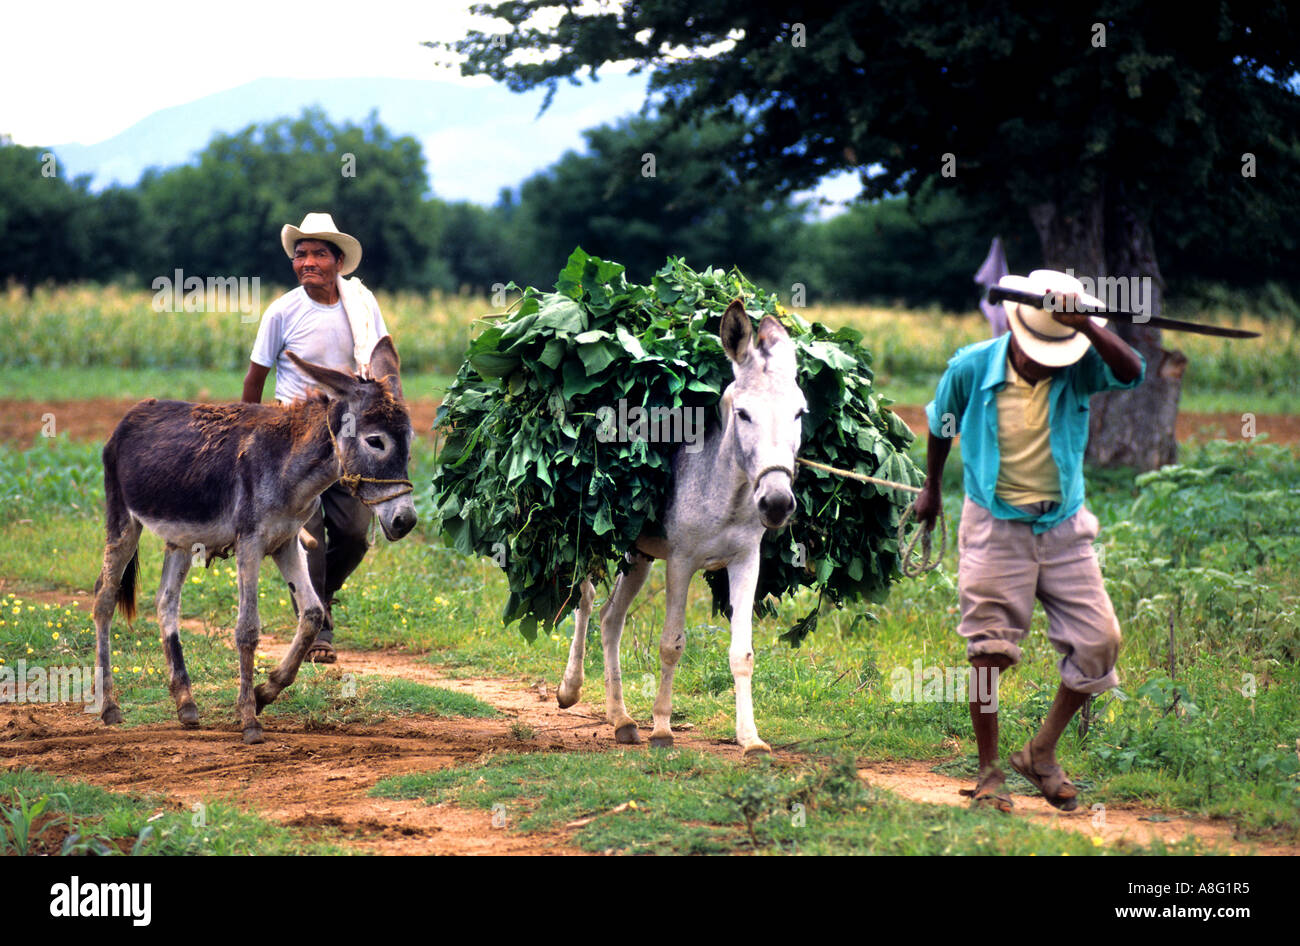 Chiapas Mexico Farmer Farm cart horse donkey Stock Photo